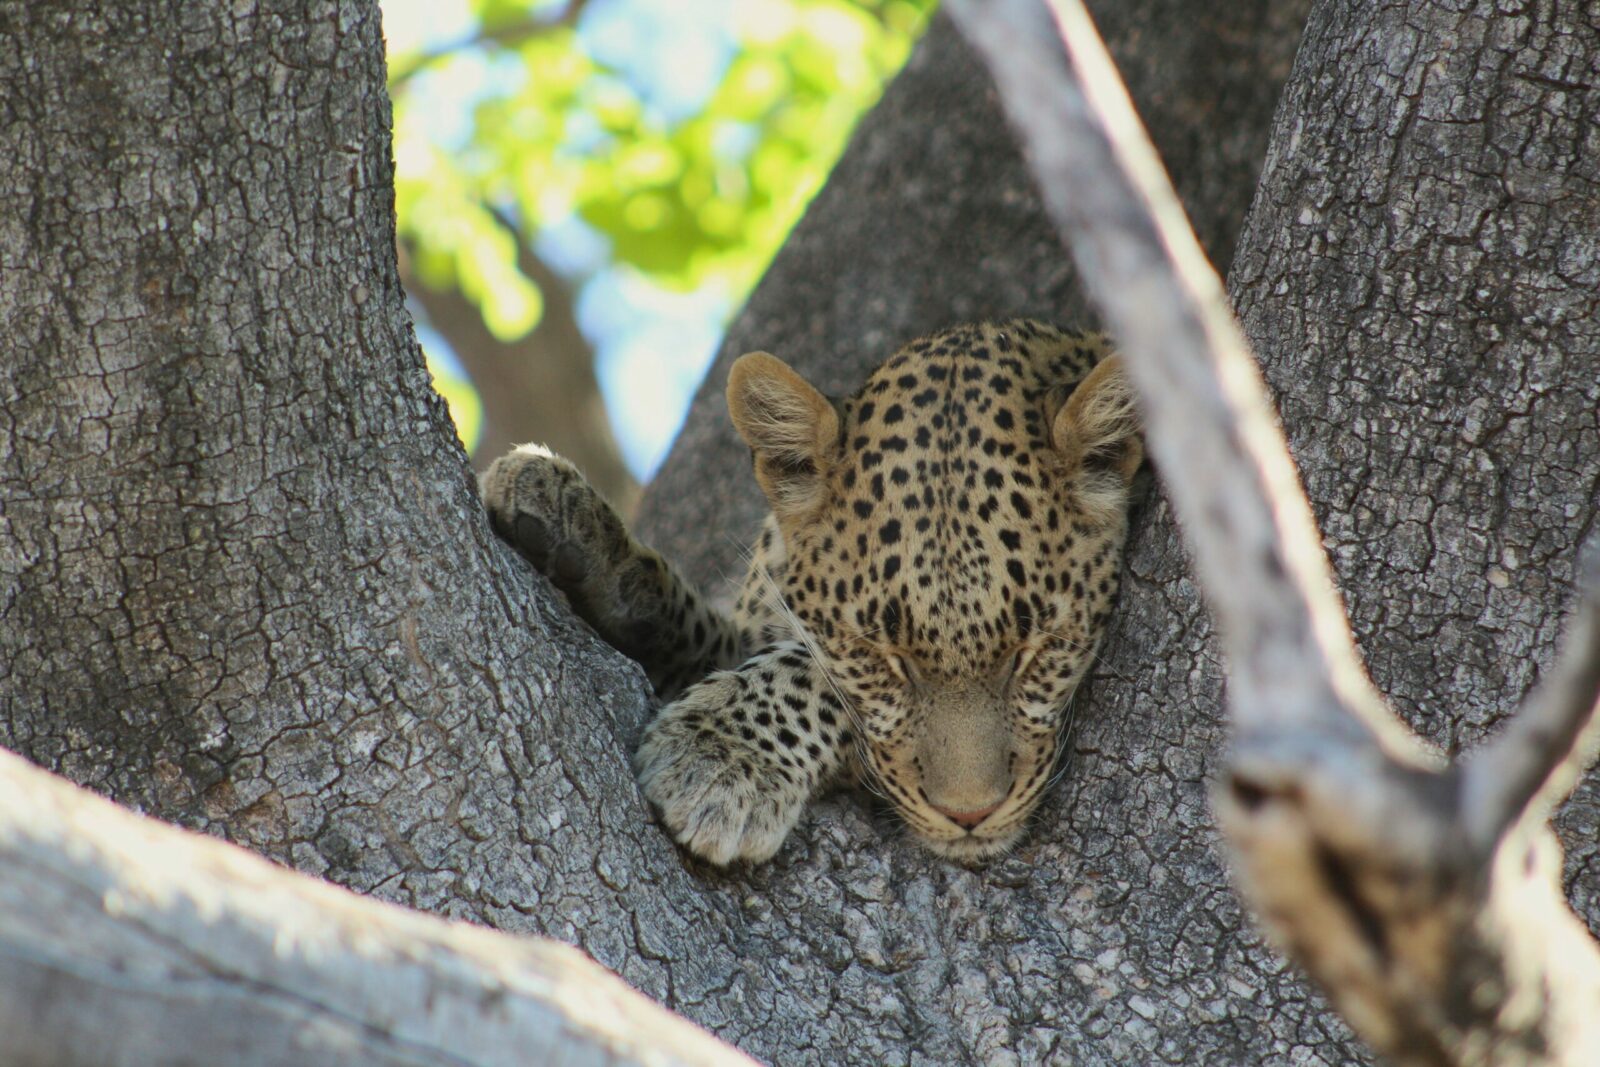 A leopard sleeping in a tree.